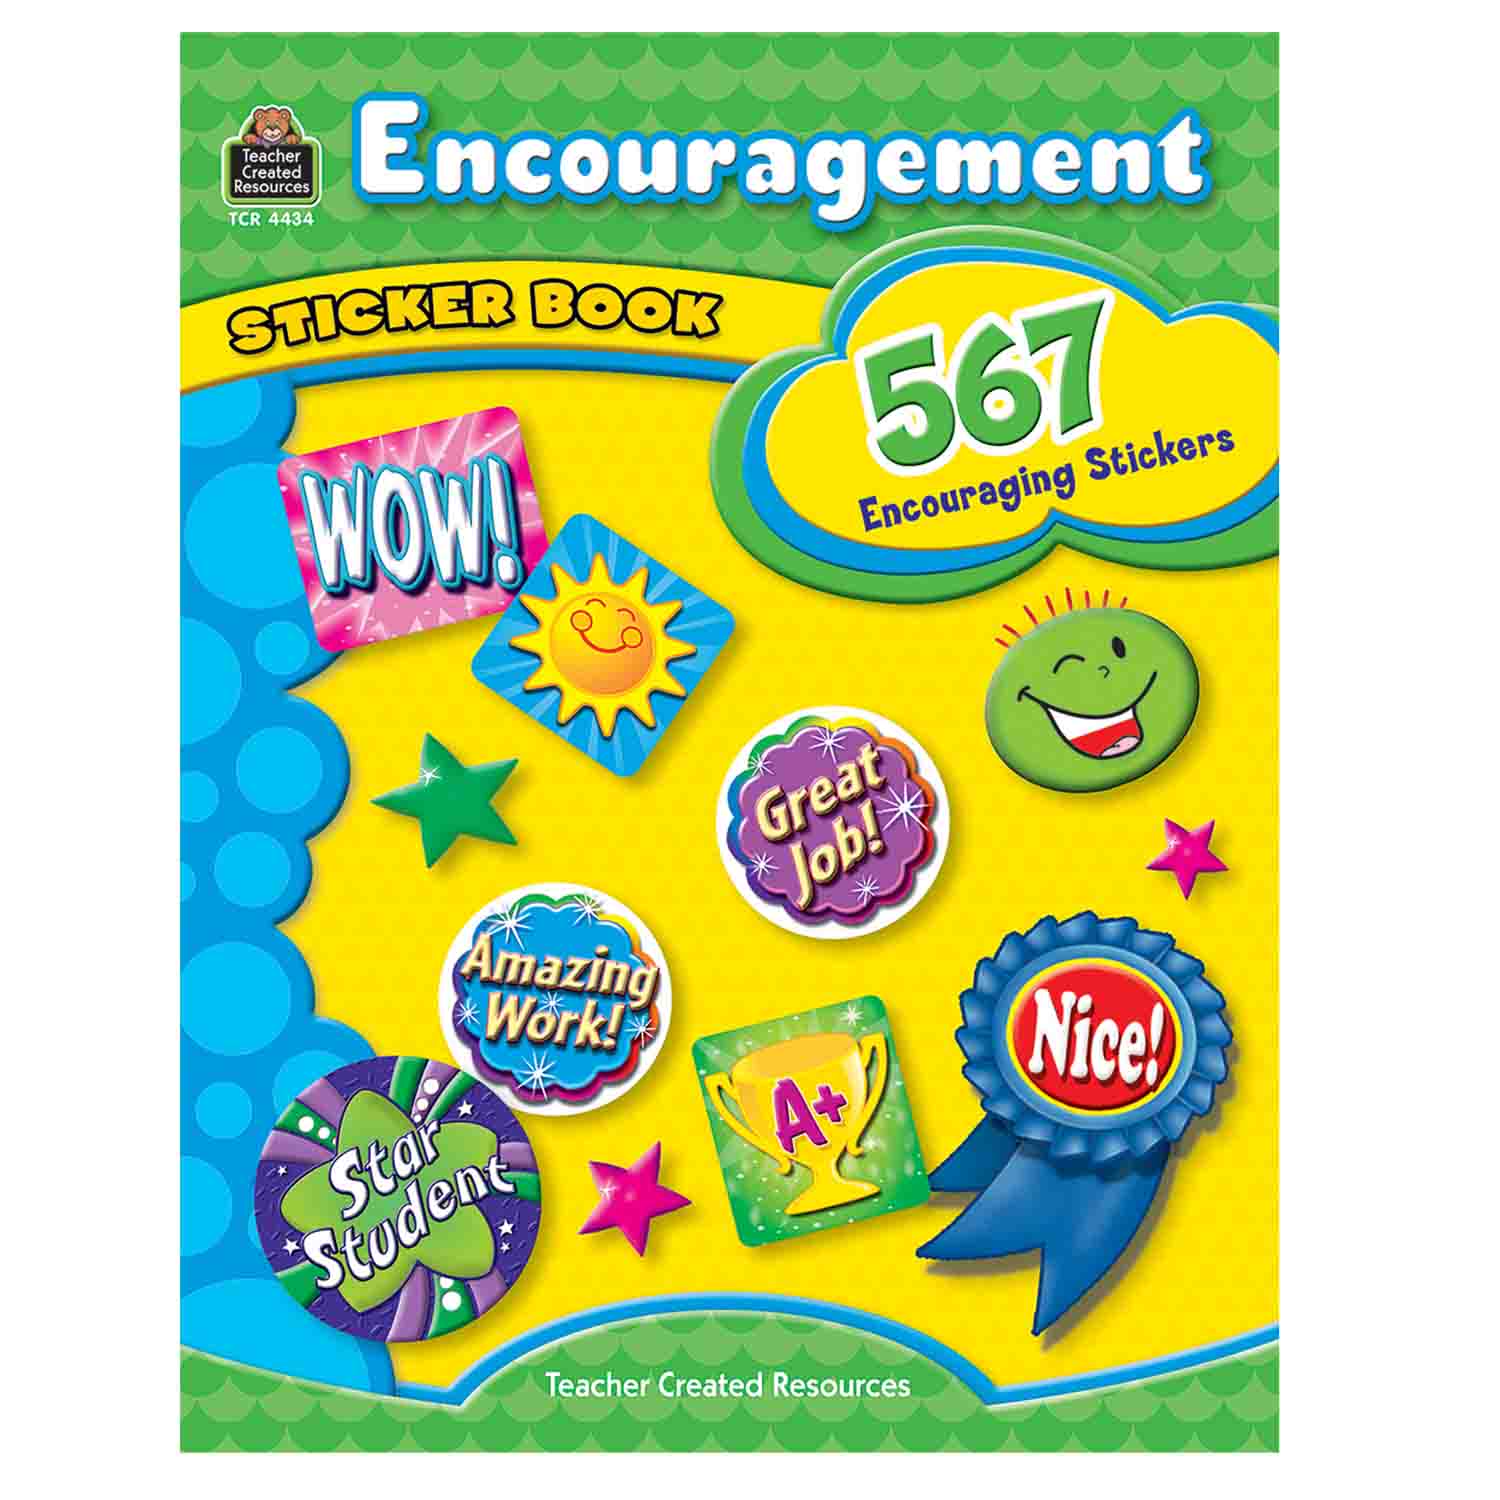 Teacher Created Resources Encouragement Book Sticker